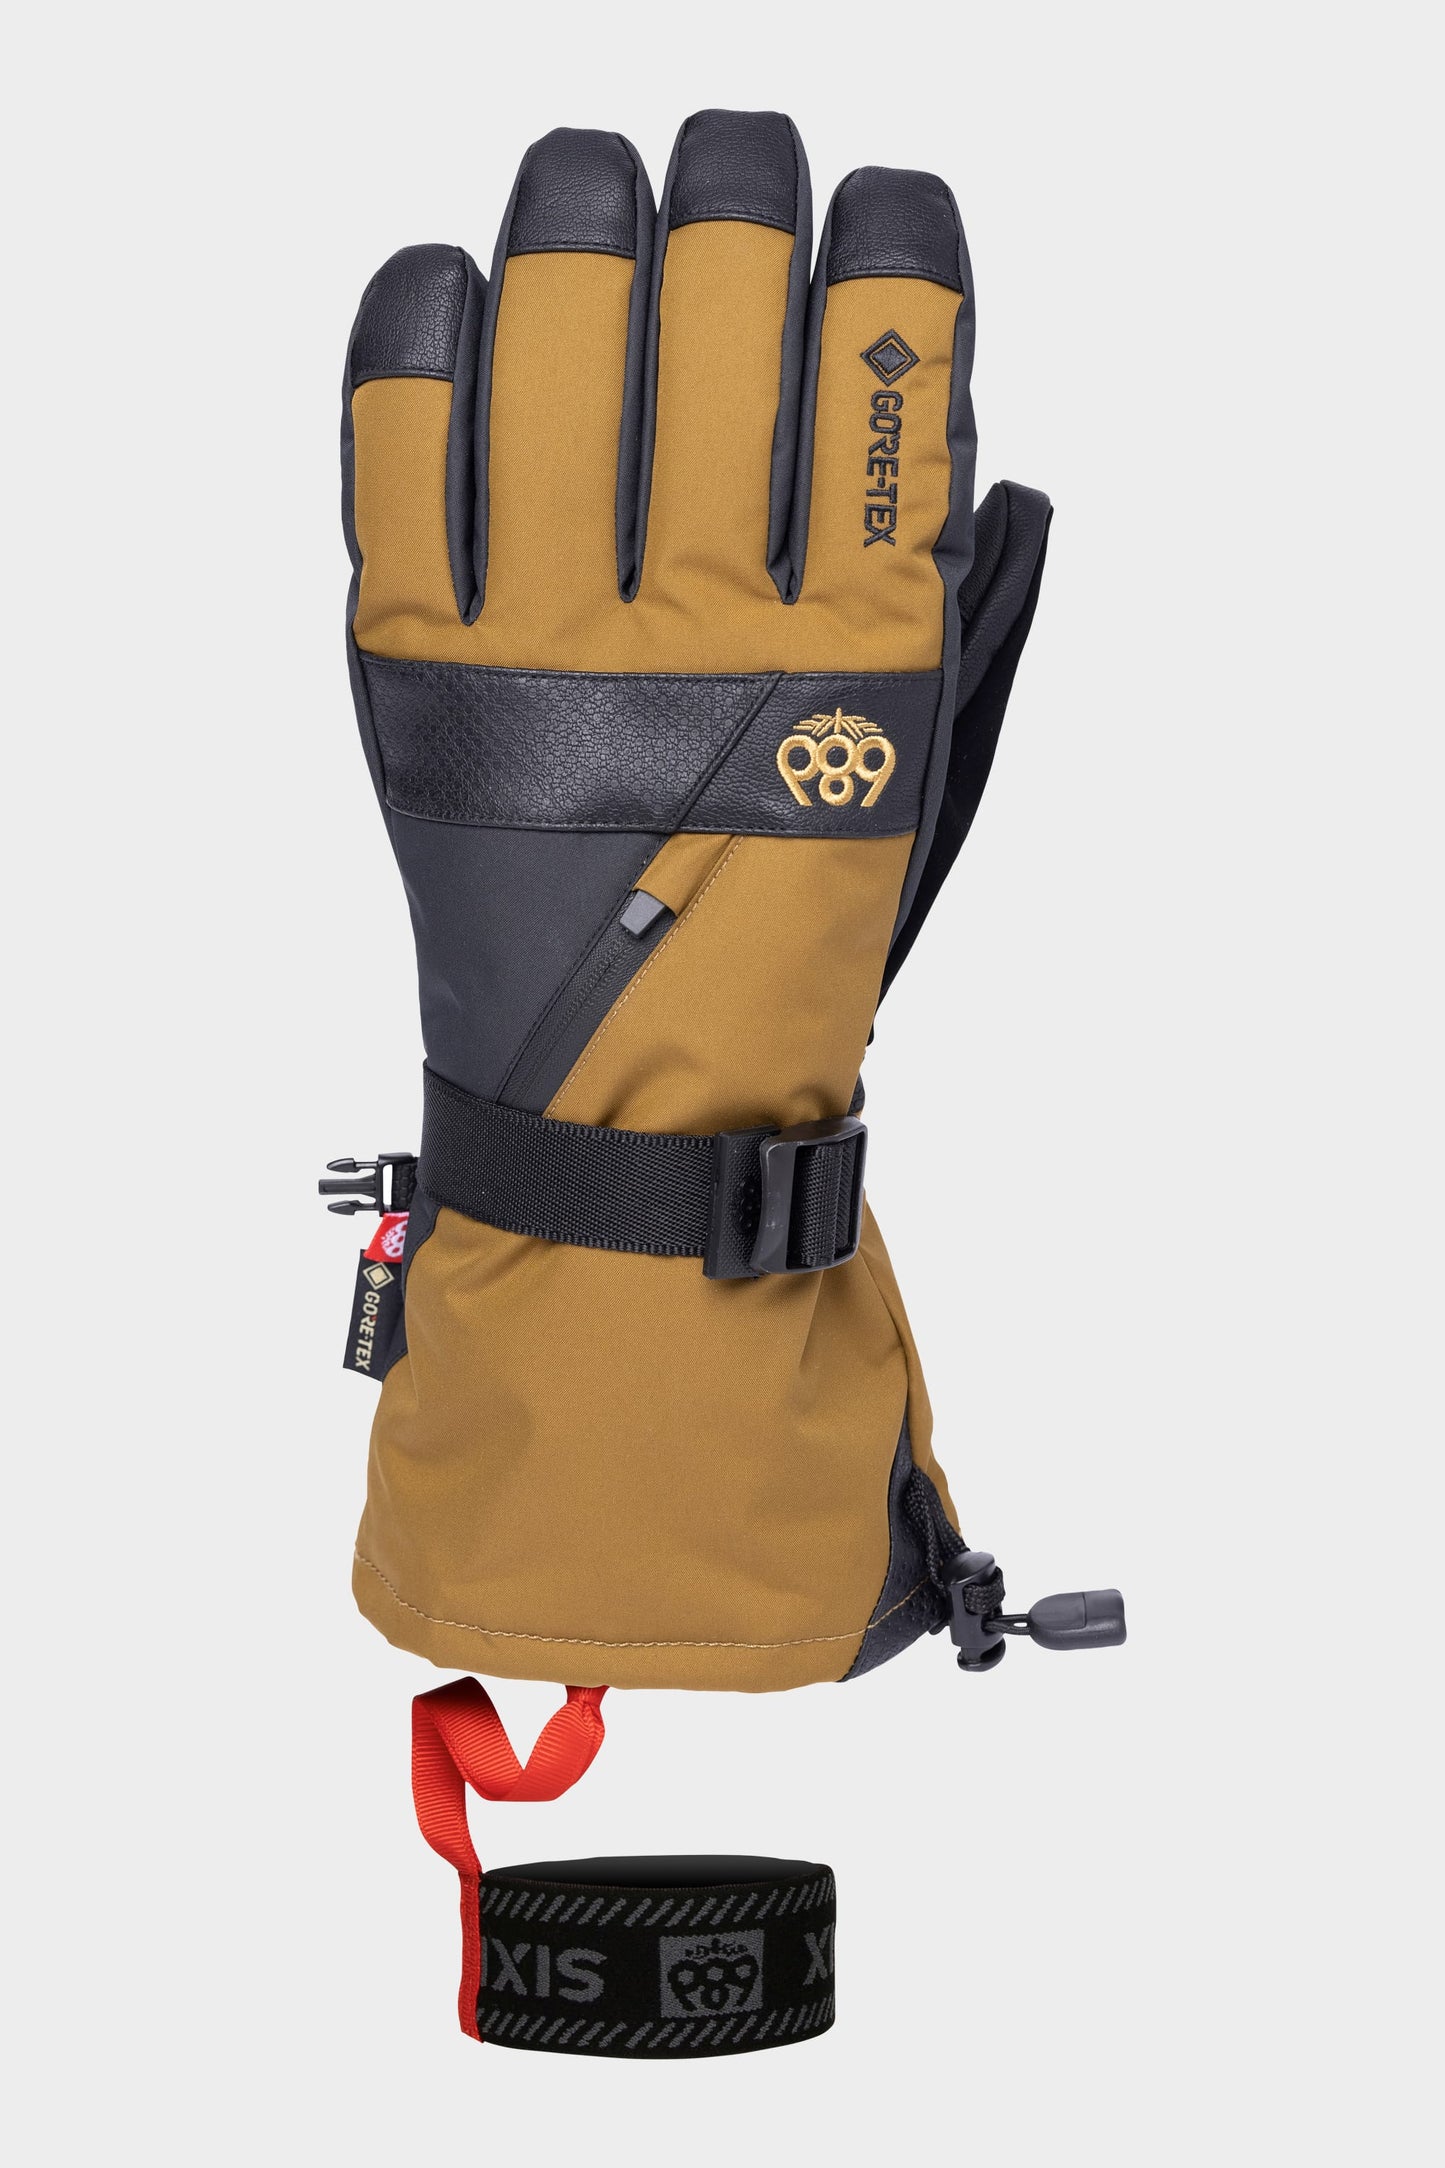 686 Men's GORE-TEX SMARTY 3-N-1 Gauntlet Glove - Bison